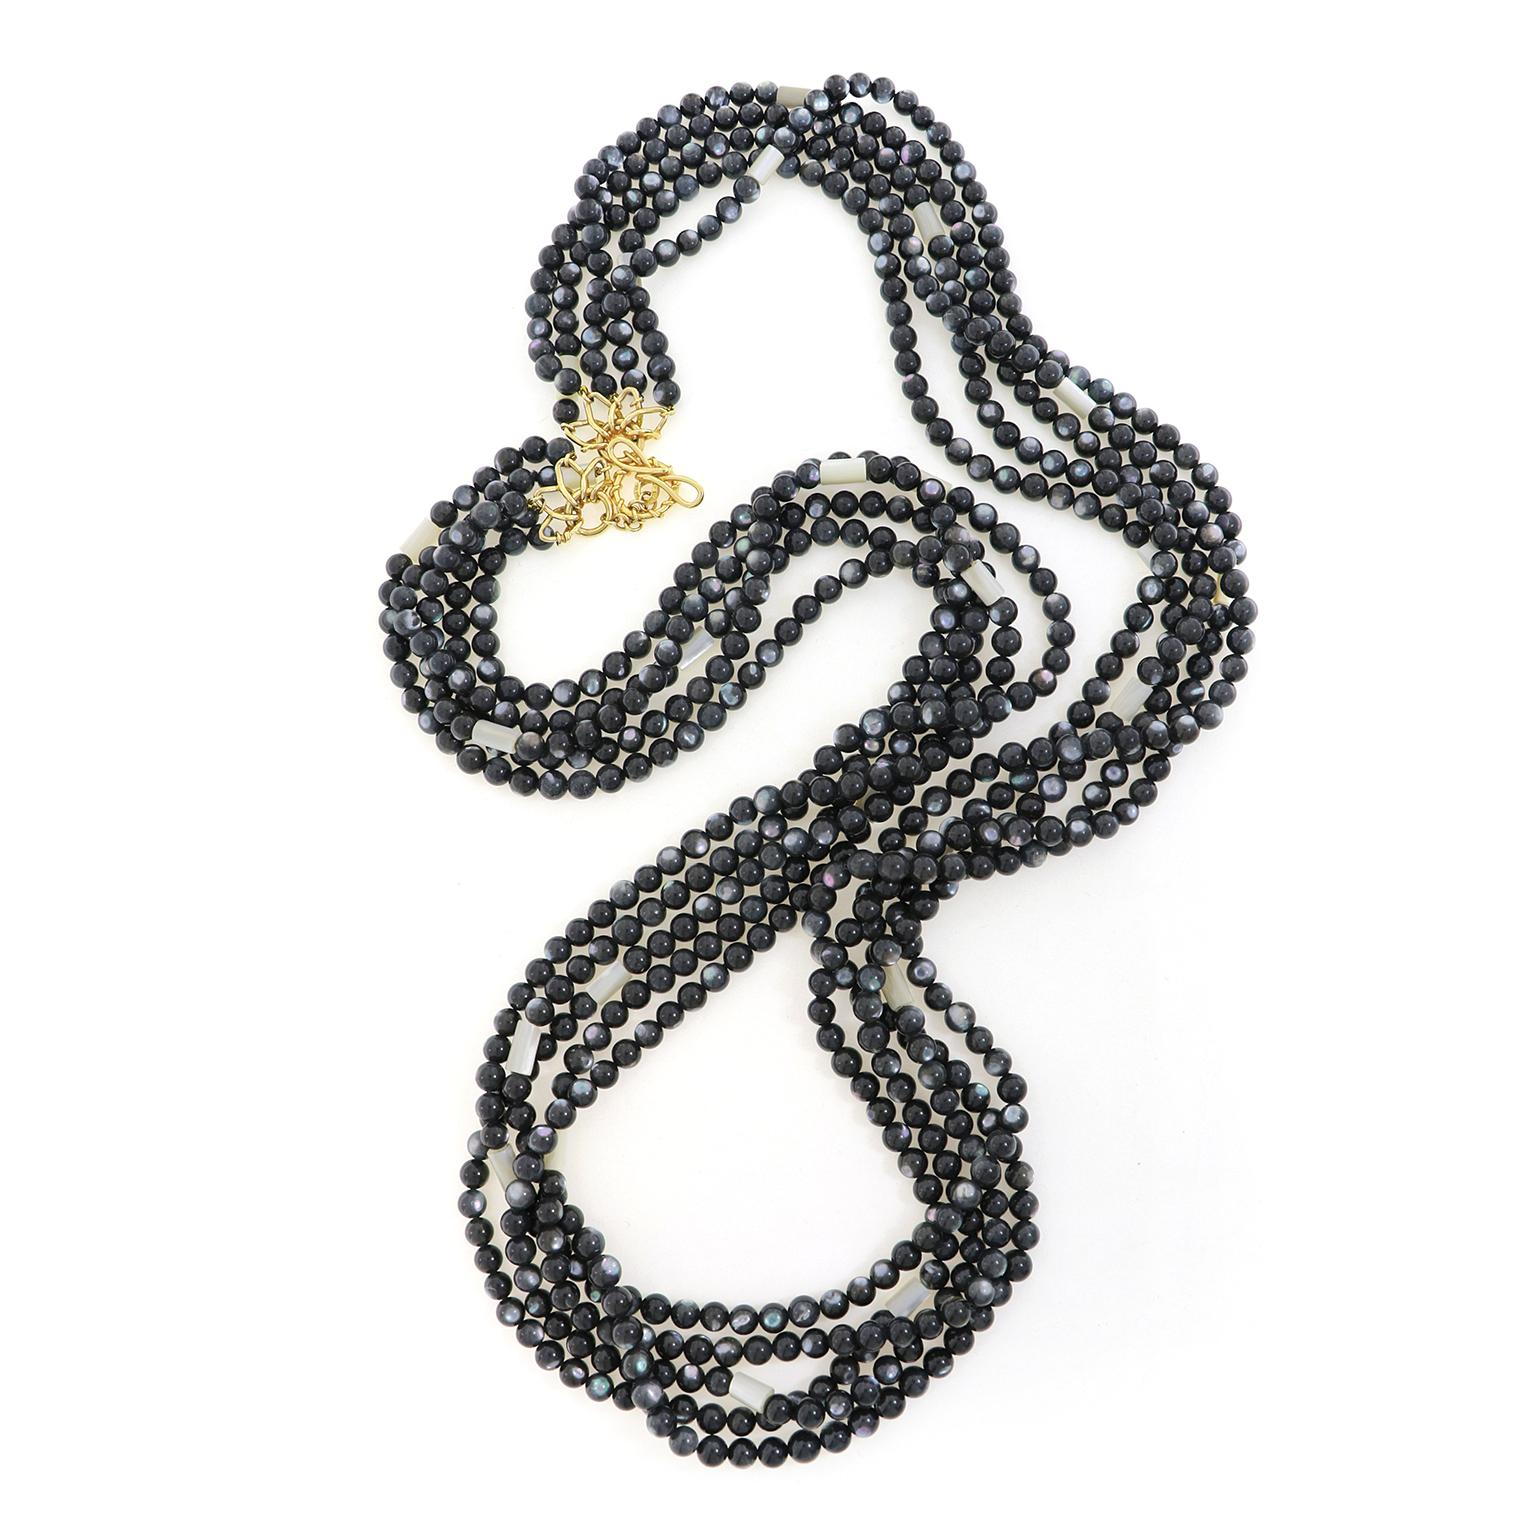 Perlen aus schwarzem Perlmutt schimmern in verschiedenen Farben in dieser fünfsträngigen Halskette, akzentuiert durch weißes Perlmutt und gesichert durch 18k Gelbgold. Runde Perlen aus schwarzem Perlmutt sind auf koordinierten Fäden aufgereiht,